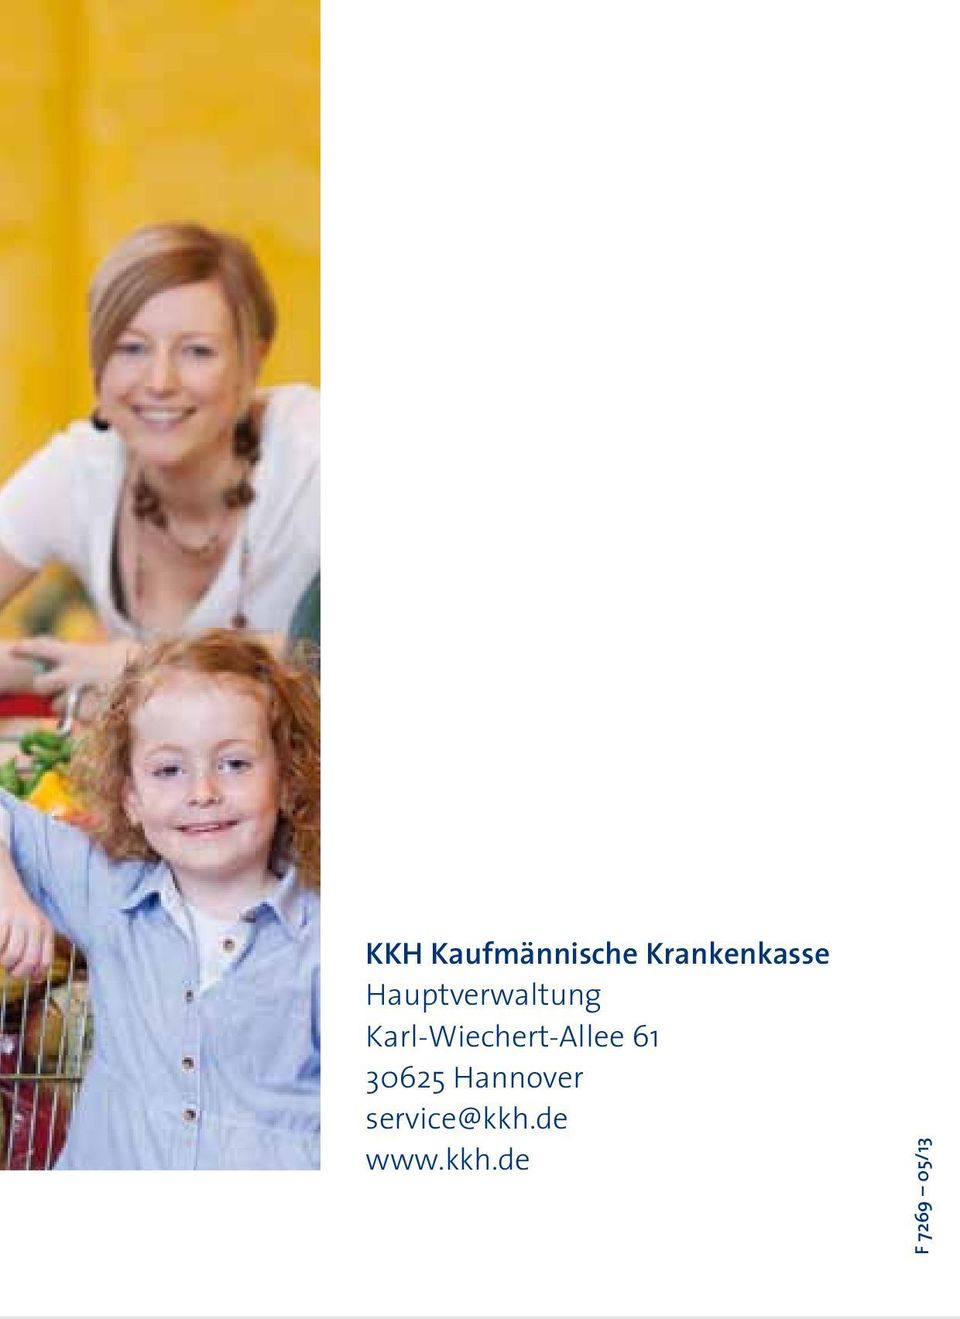 Karl-Wiechert-Allee 6 3065